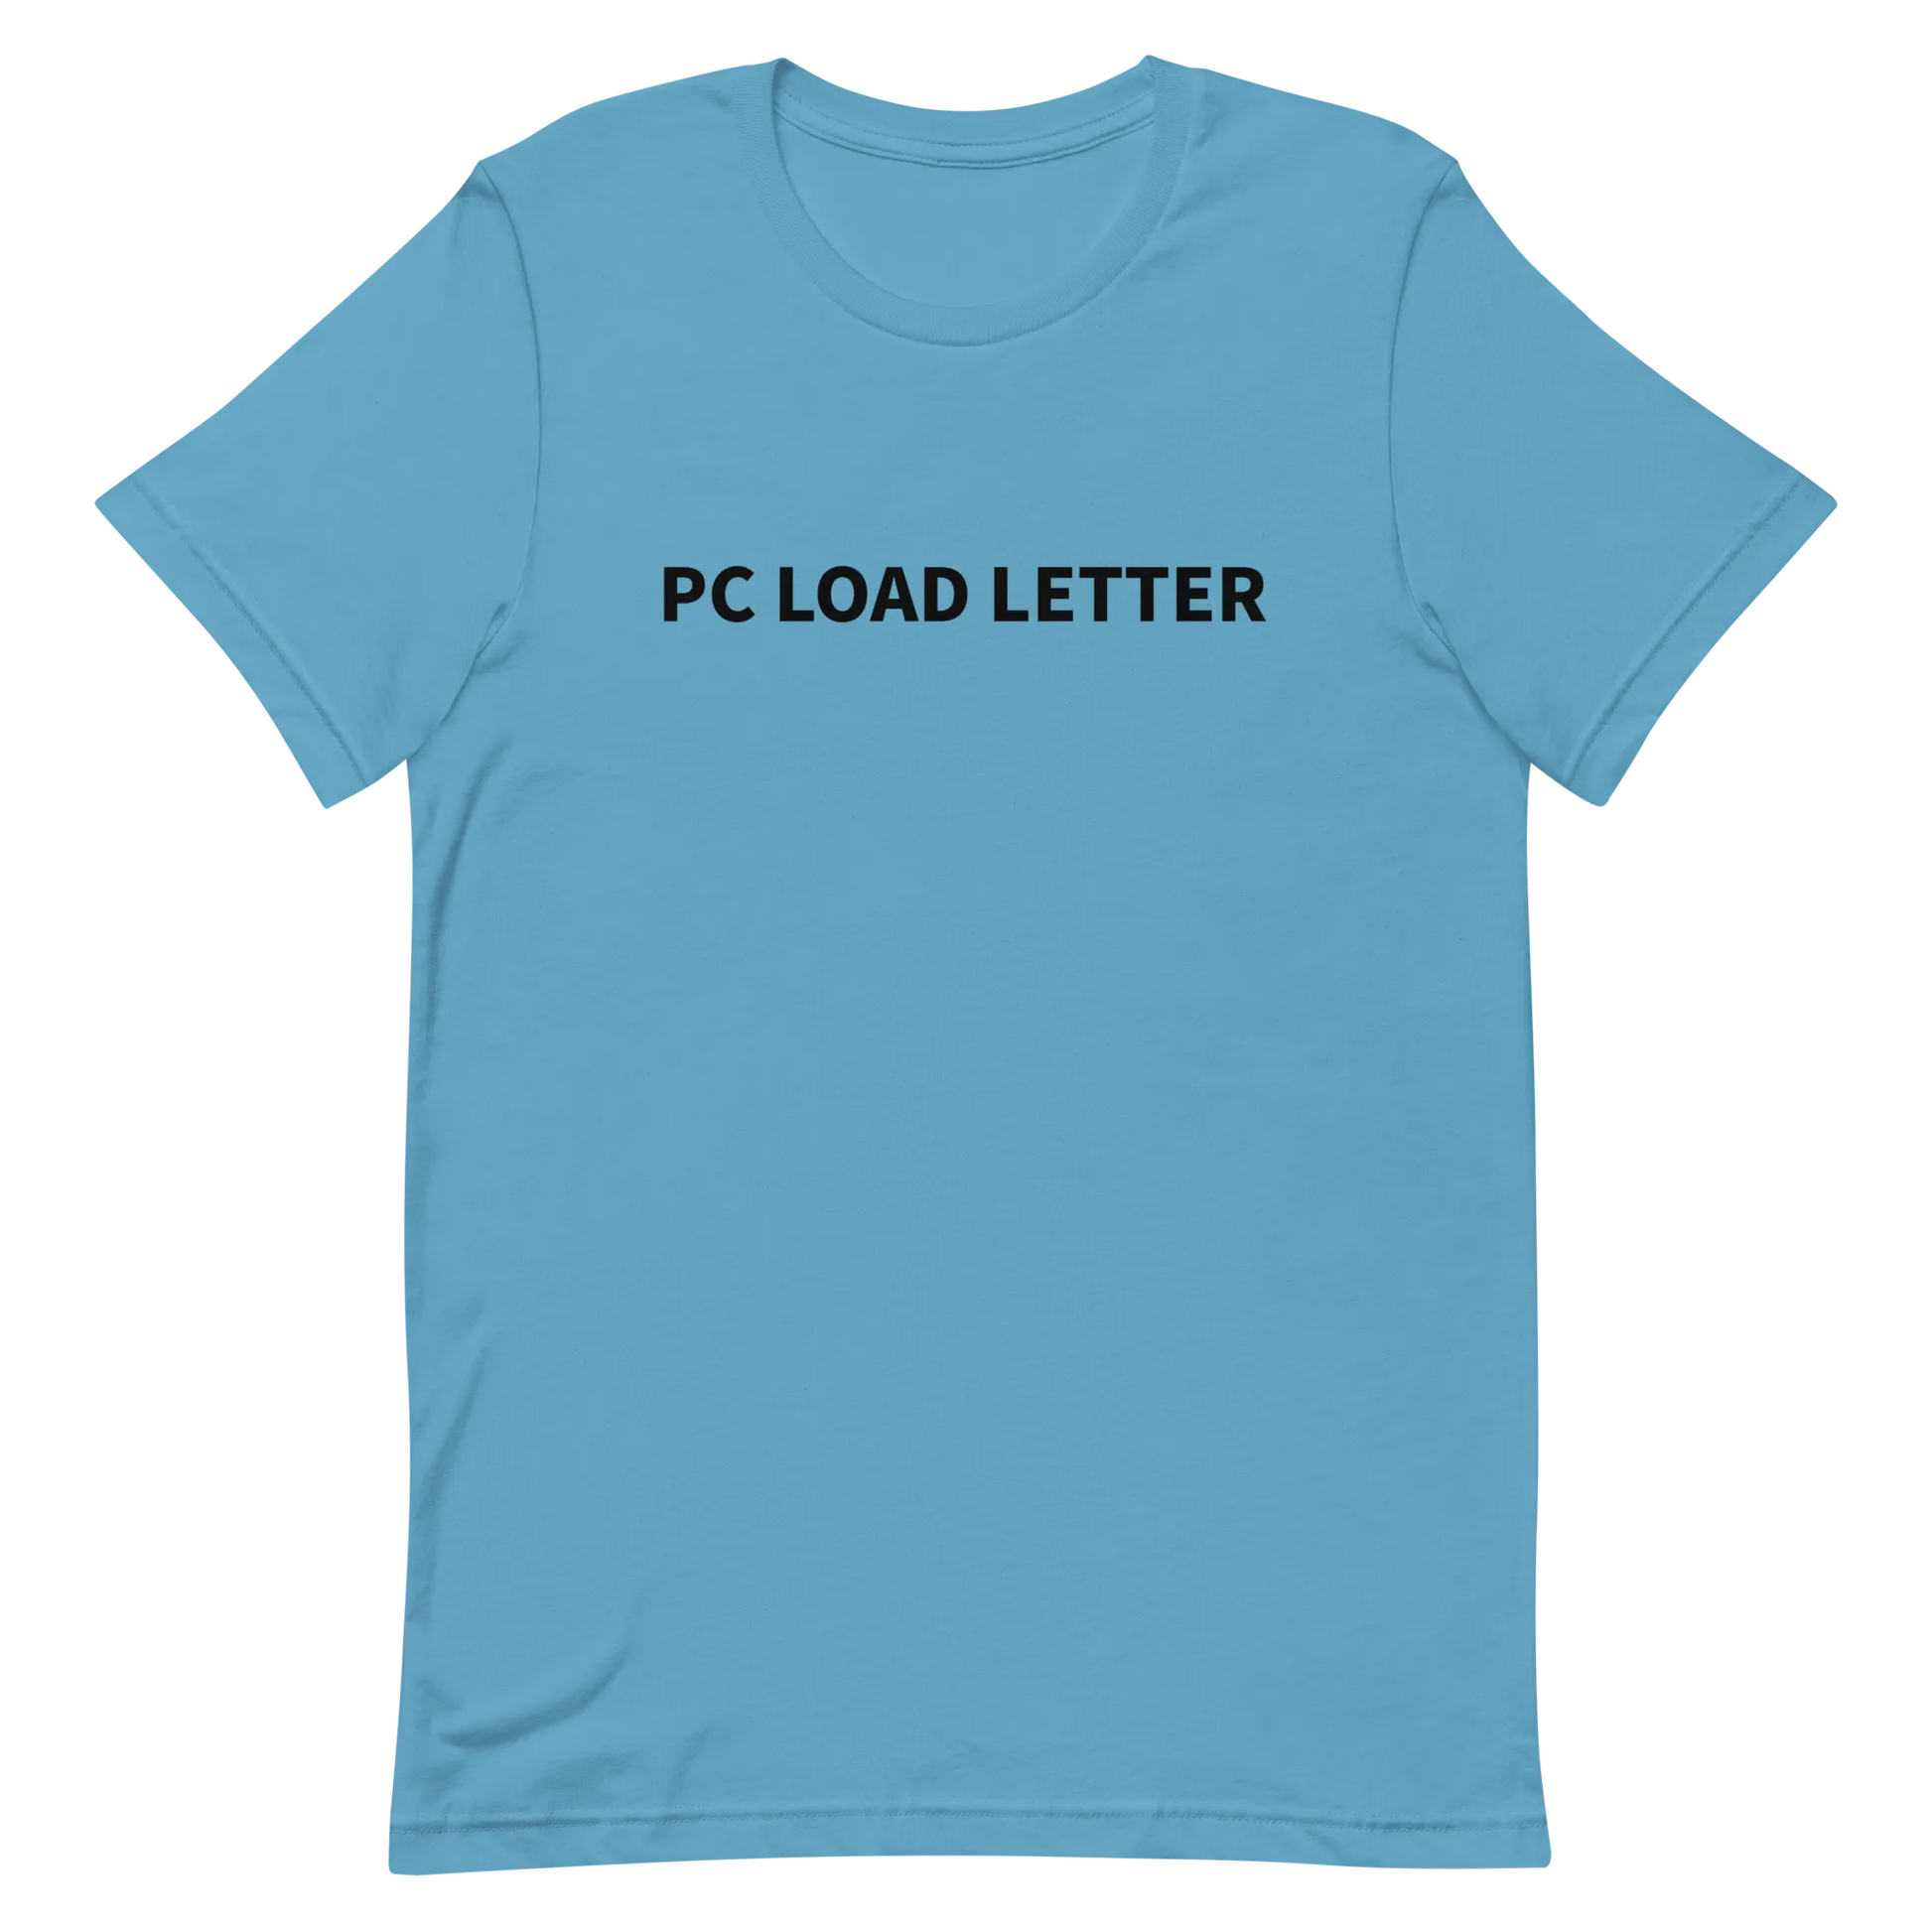 PC Load Letter Tee in Ocean Blue flatlay